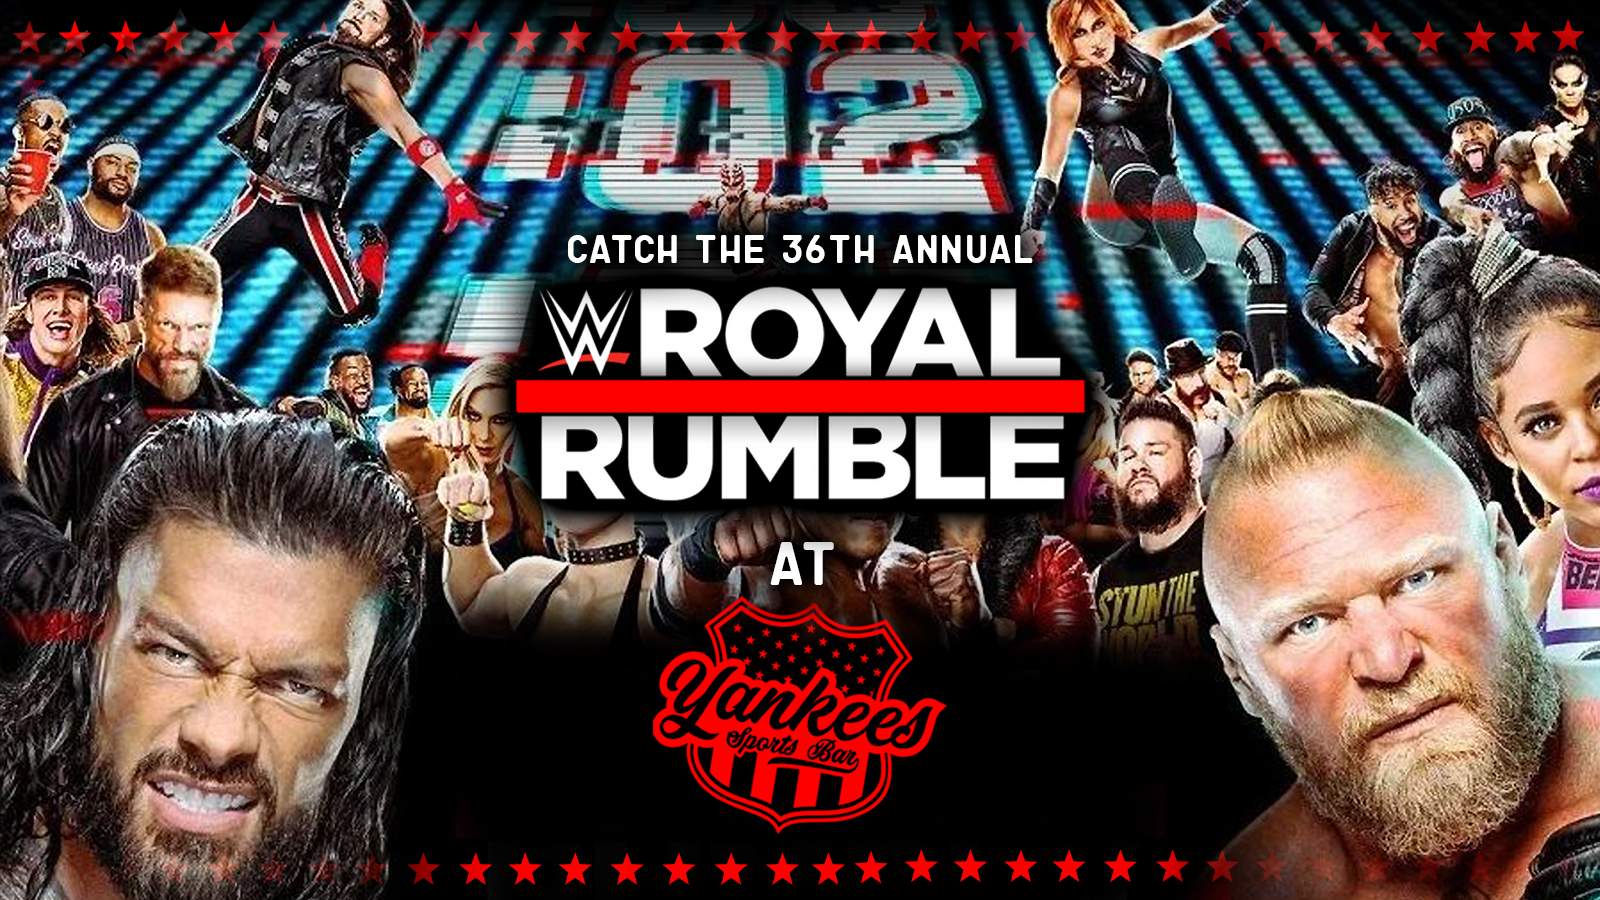 WWE ROYAL RUMBLE at Yankees, Liverpool on 28th Jan Fatsoma